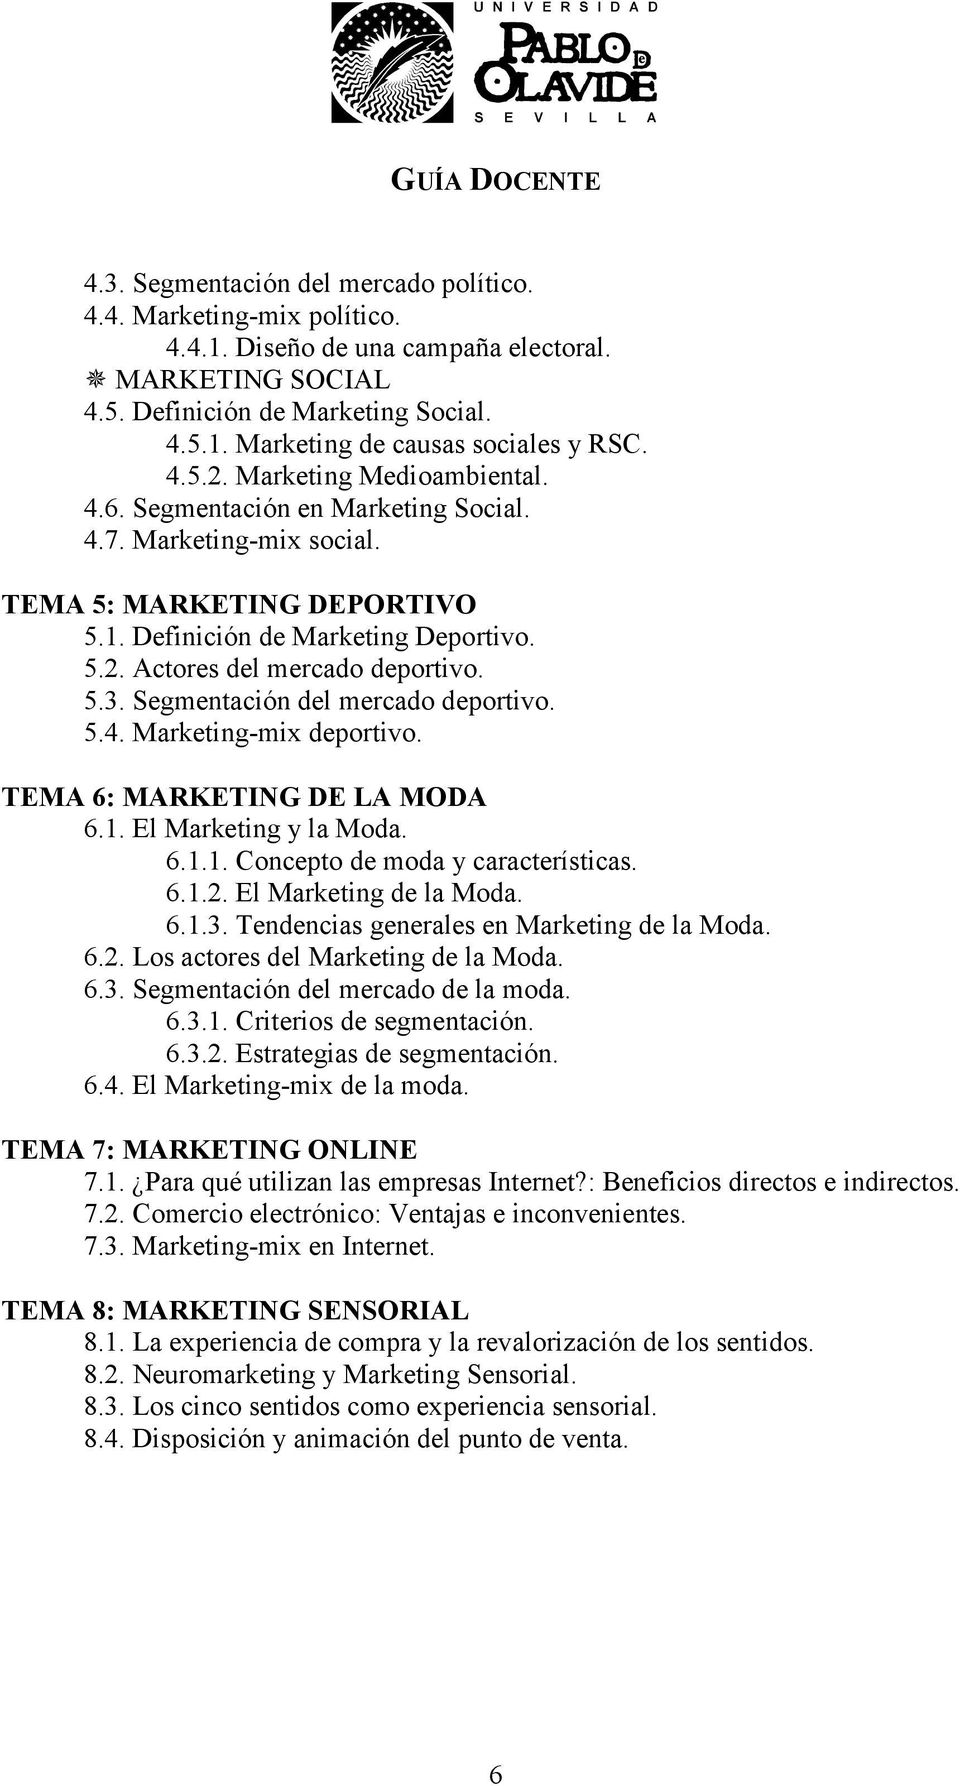 5.3. Segmentación del mercado deportivo. 5.4. Marketing-mix deportivo. TEMA 6: MARKETING DE LA MODA 6.1. El Marketing y la Moda. 6.1.1. Concepto de moda y características. 6.1.2.